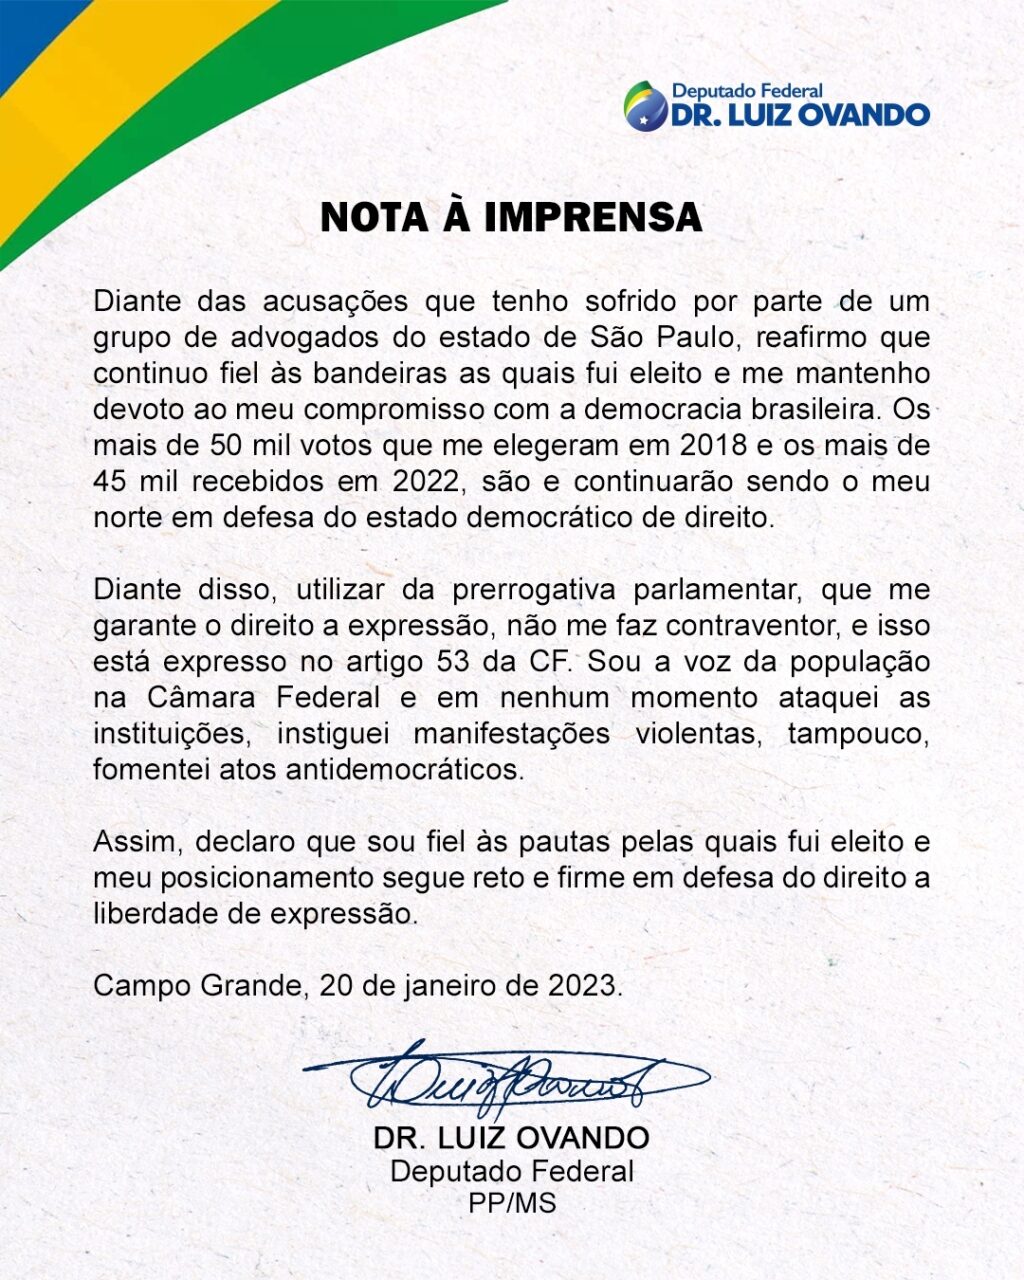 O deputado federal de Mato Grosso do Sul, Dr. Luiz Ovando (PP), emitiu uma nota de esclarecimento